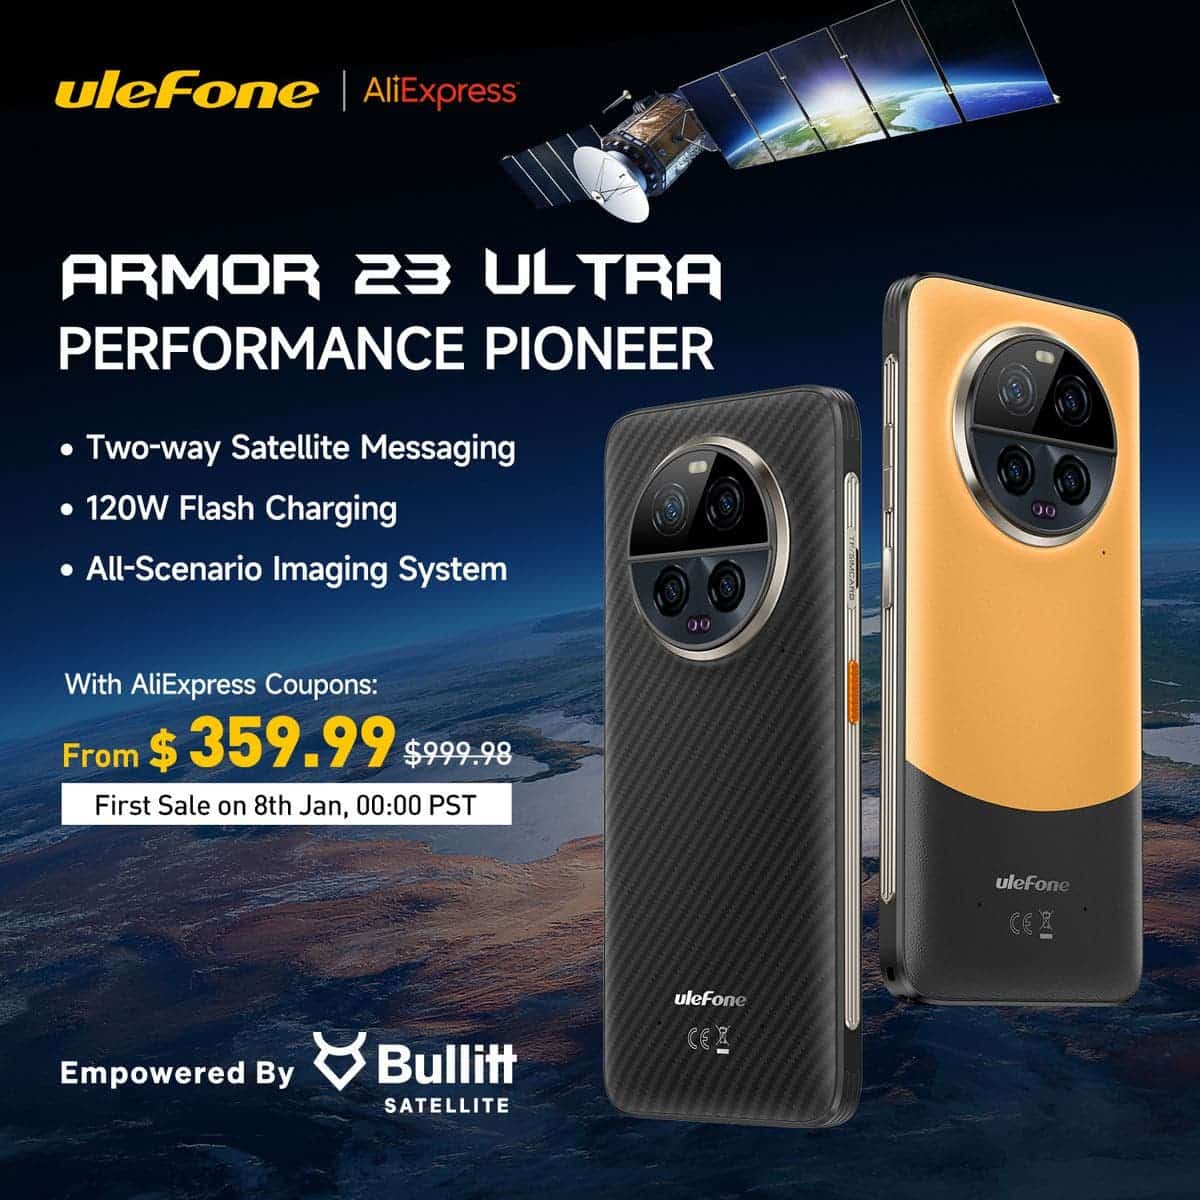 El nuevo teléfono insignia por satélite Armor 23 Ultra de Ulefone